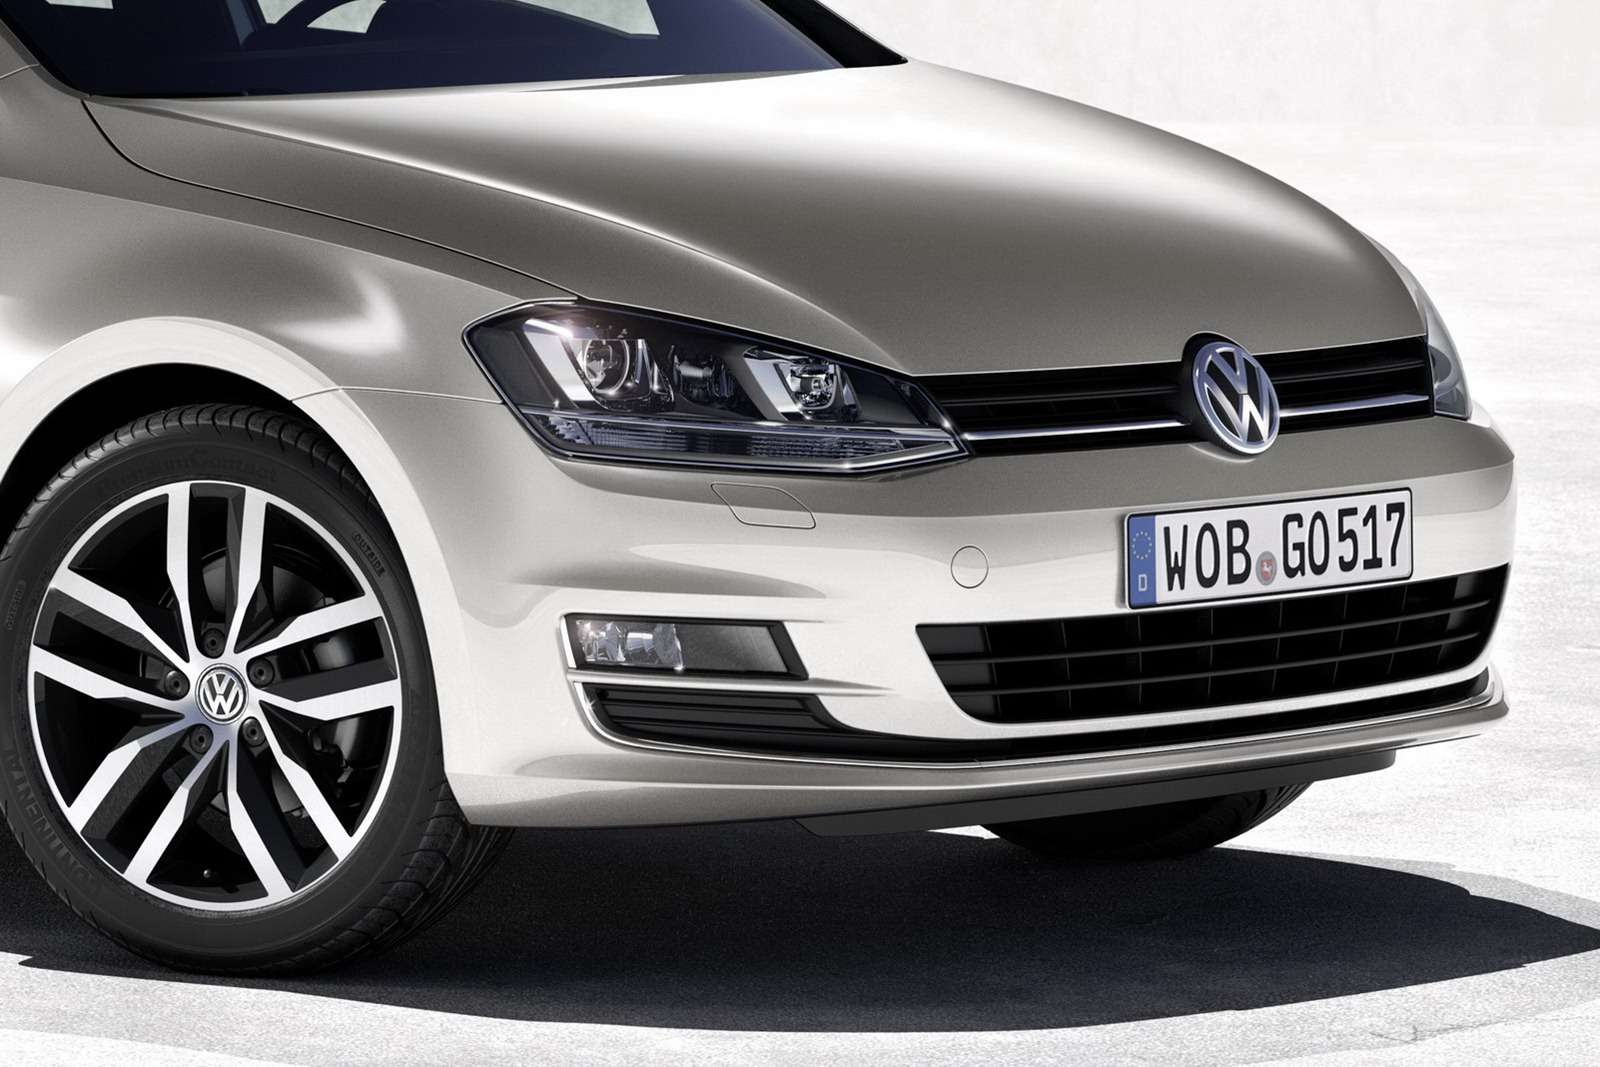 Volkswagen Golf VII 2013 oficjalnie kompletne dane